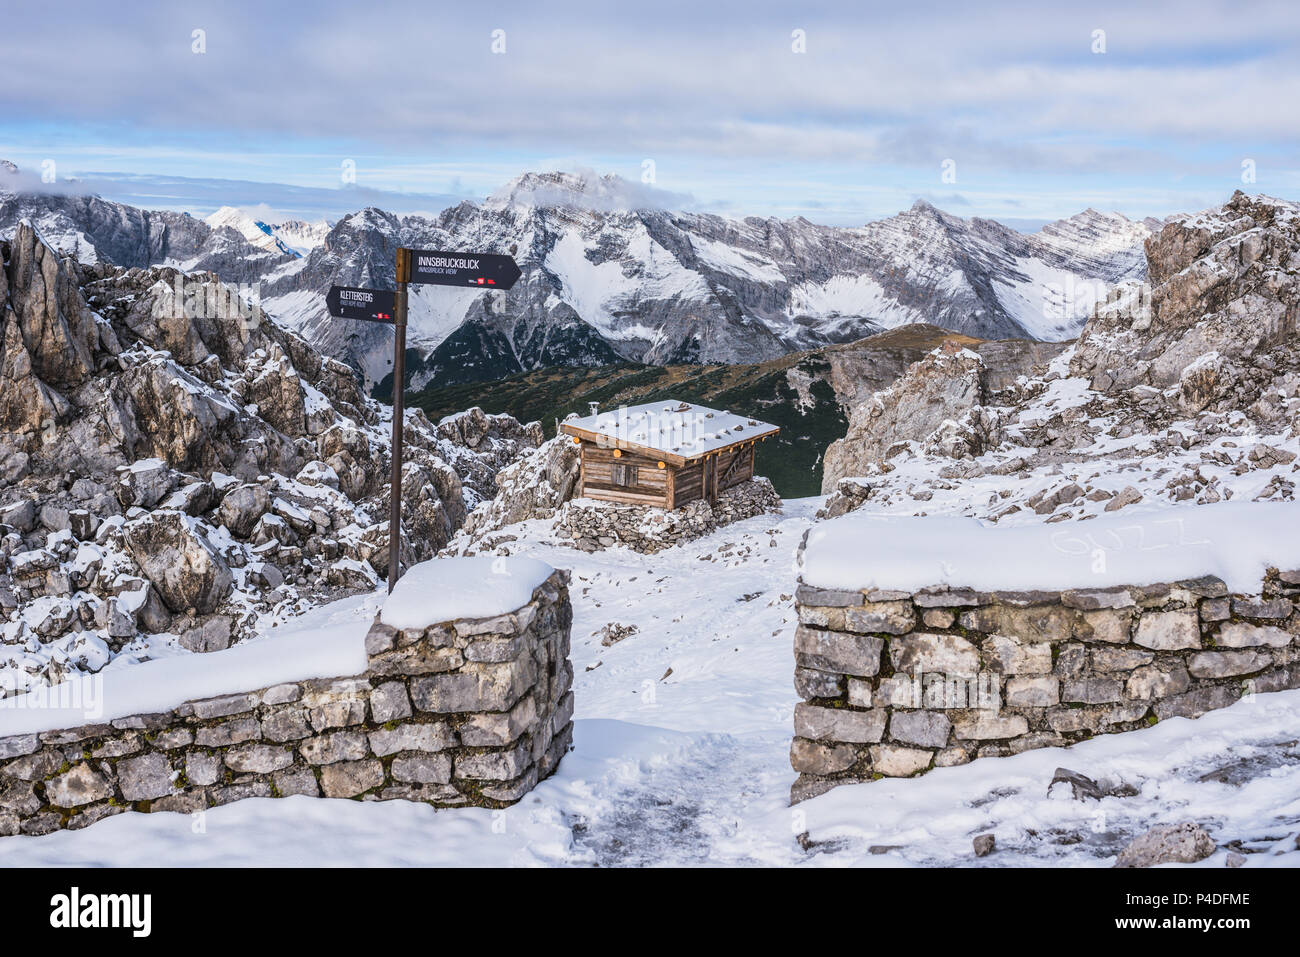 Un refuge de montagne dans les Alpes de l'Autriche à une saison d'hiver dans la neige. Hafelekarspitze - Seegrube à la montagne du Karwendel, Innsbruck, Autriche, Europe Banque D'Images